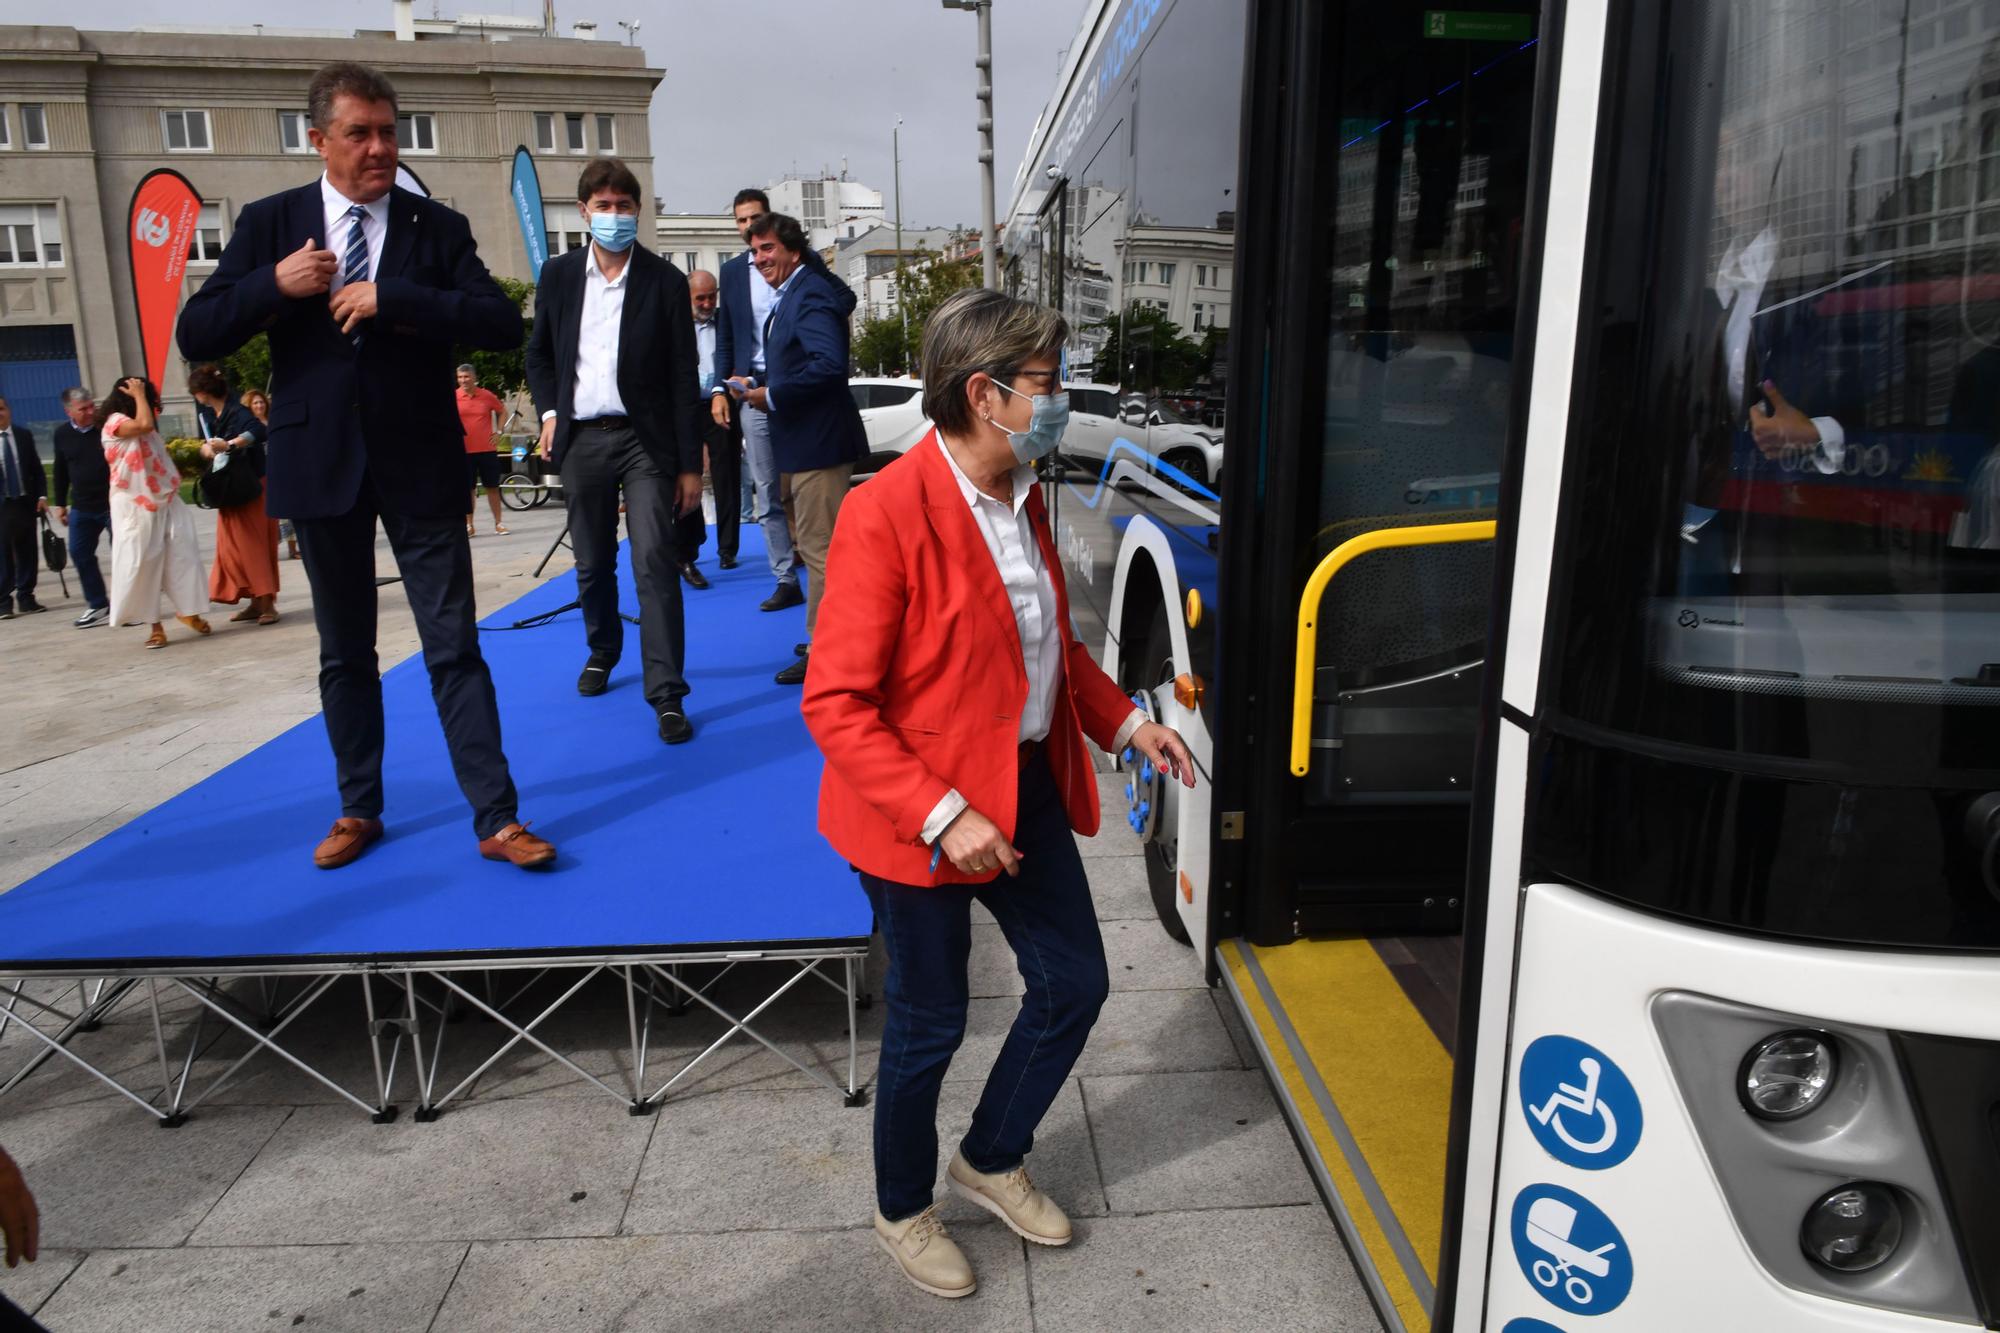 Un bus propulsado por hidrógeno se une a la línea 1 para recorrer A Coruña durante una semana